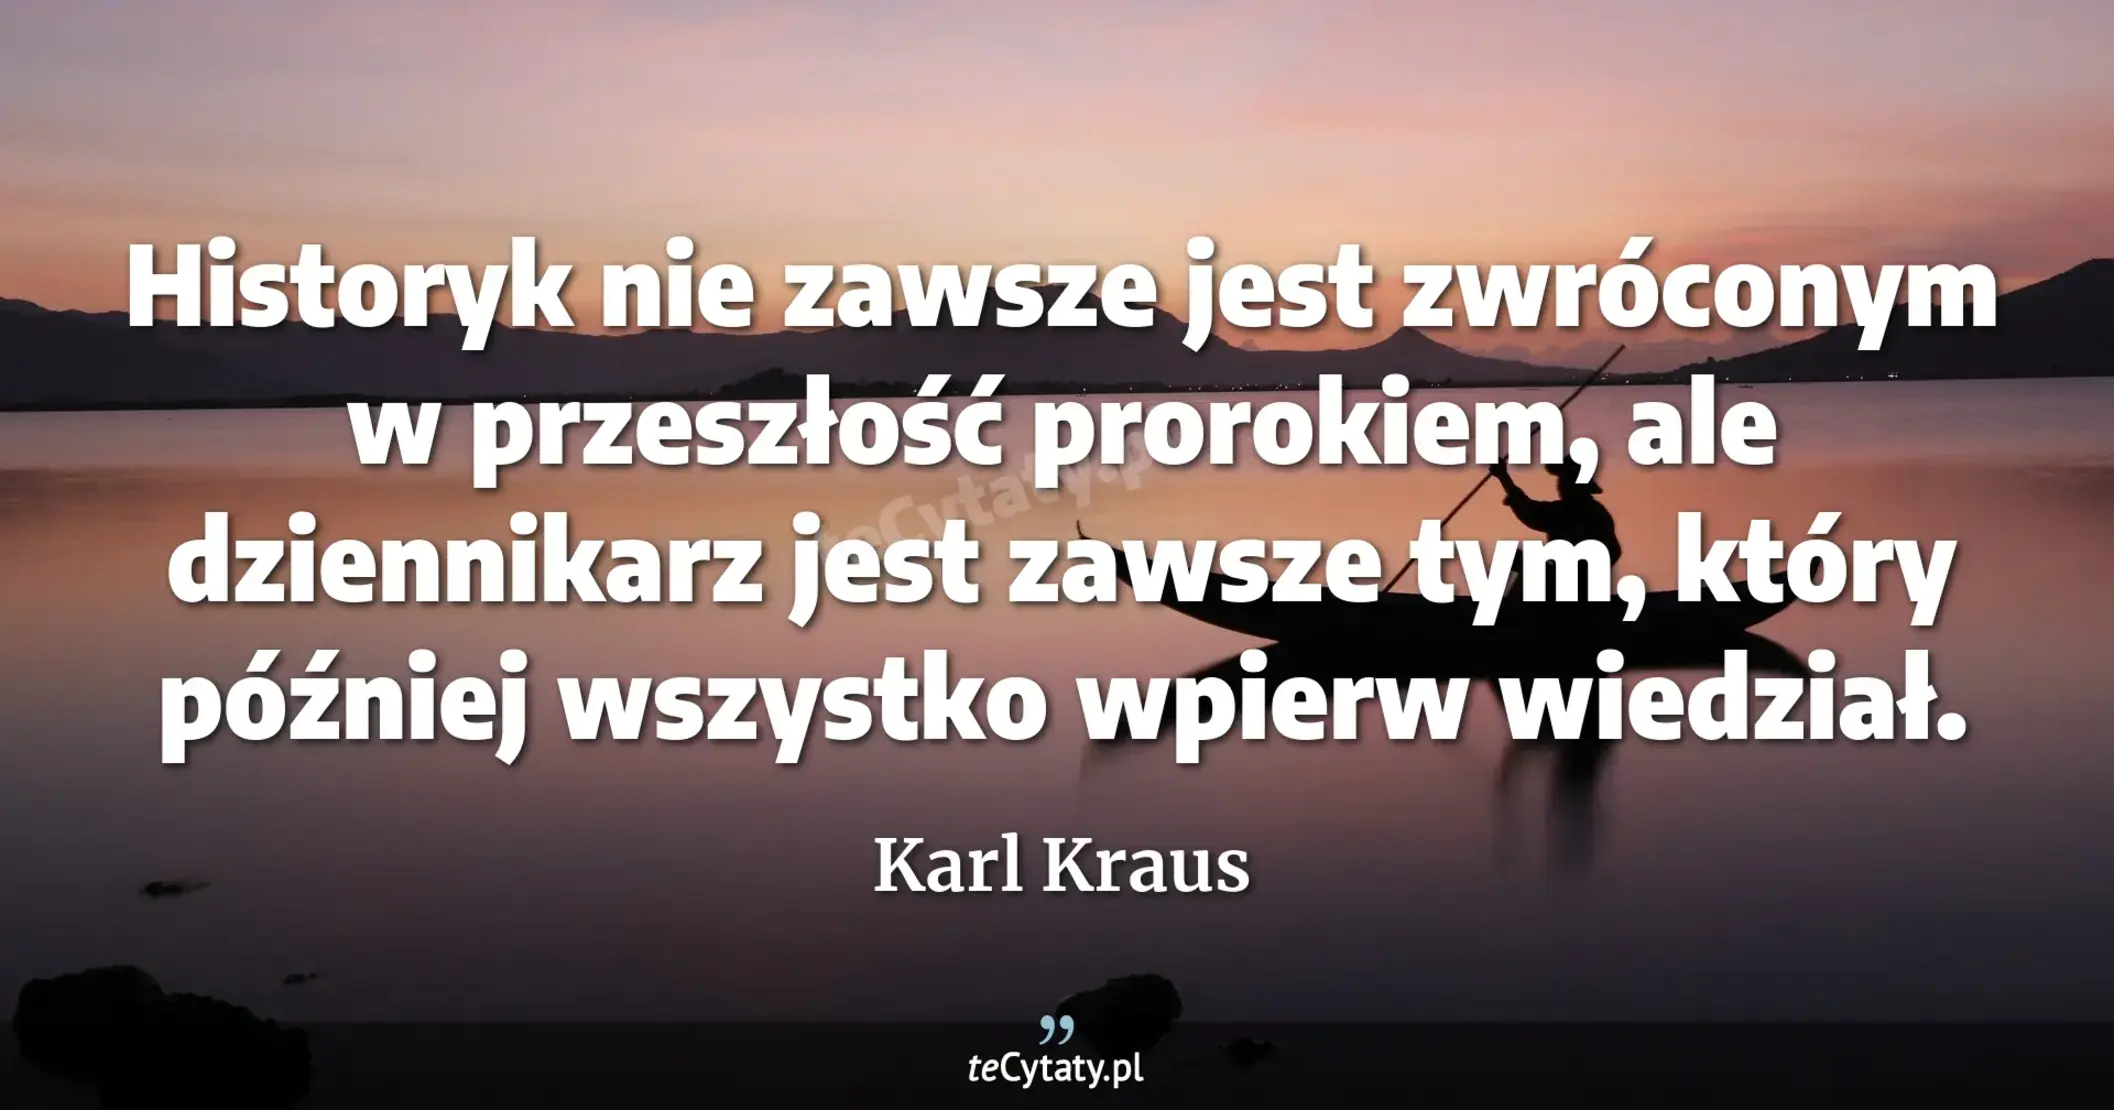 Historyk nie zawsze jest zwróconym w przeszłość prorokiem, ale dziennikarz jest zawsze tym, który później wszystko wpierw wiedział. - Karl Kraus